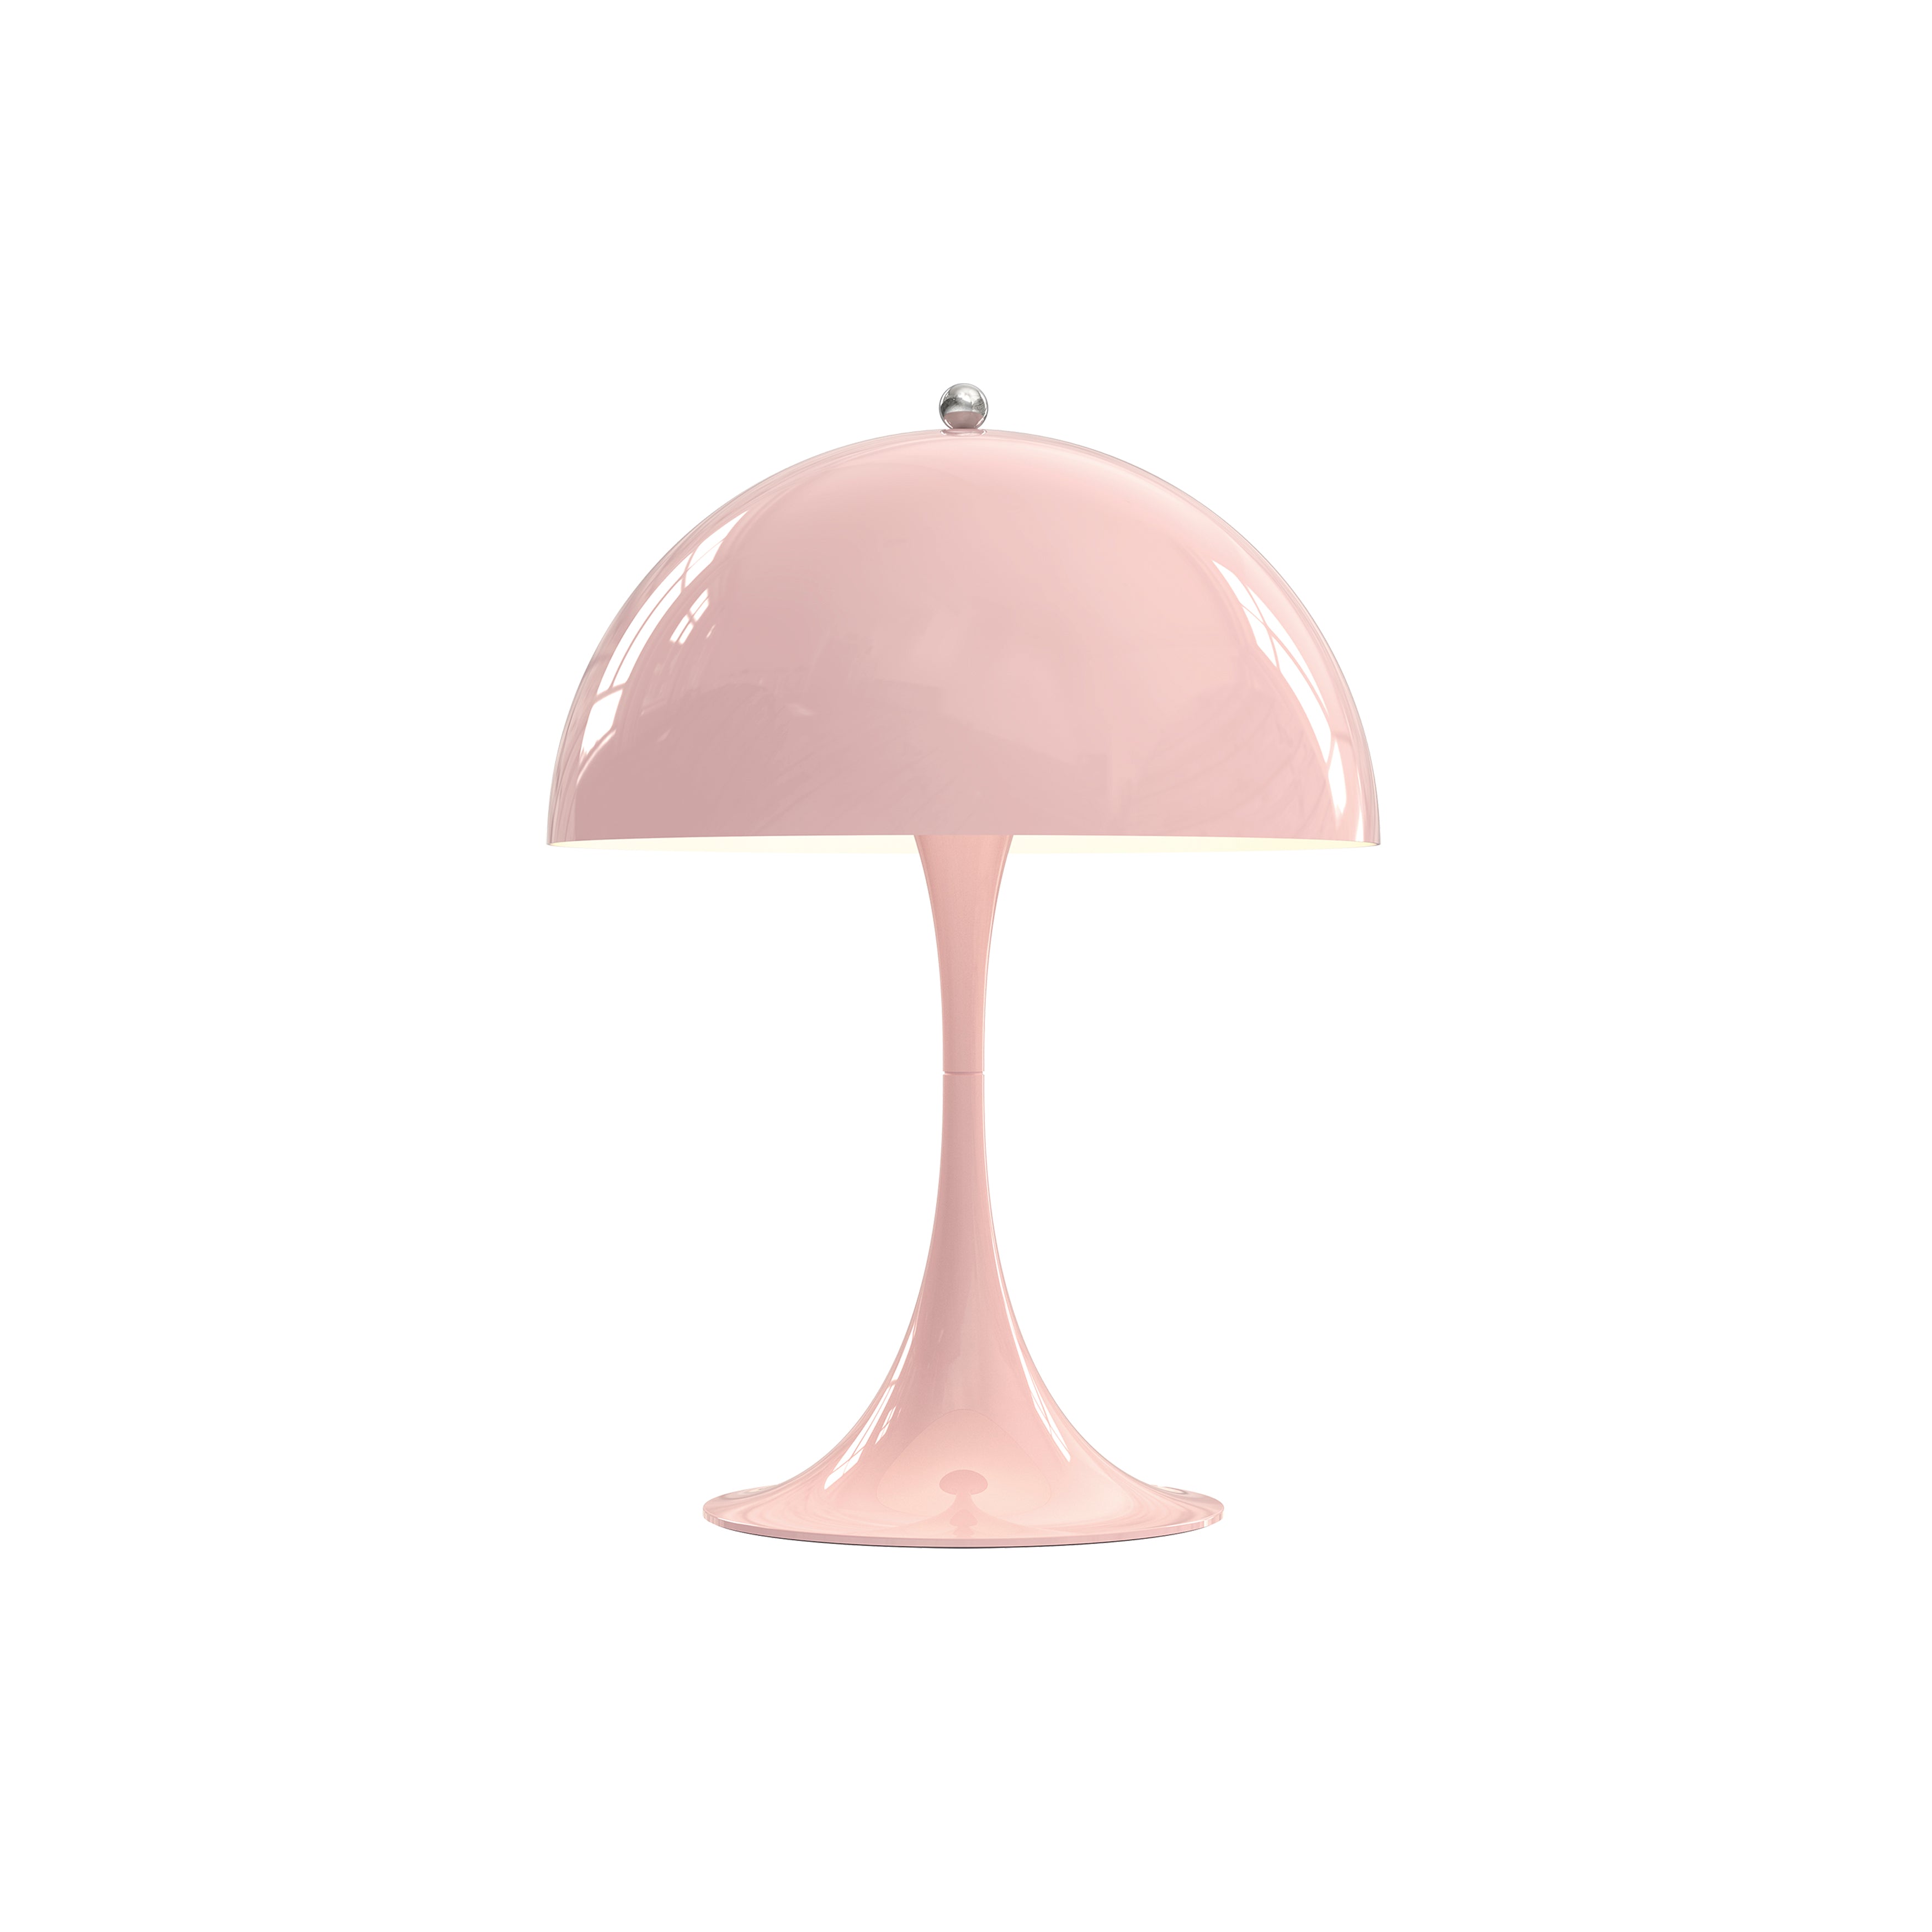 Panthella 250 Table Lamp: Pale Rose